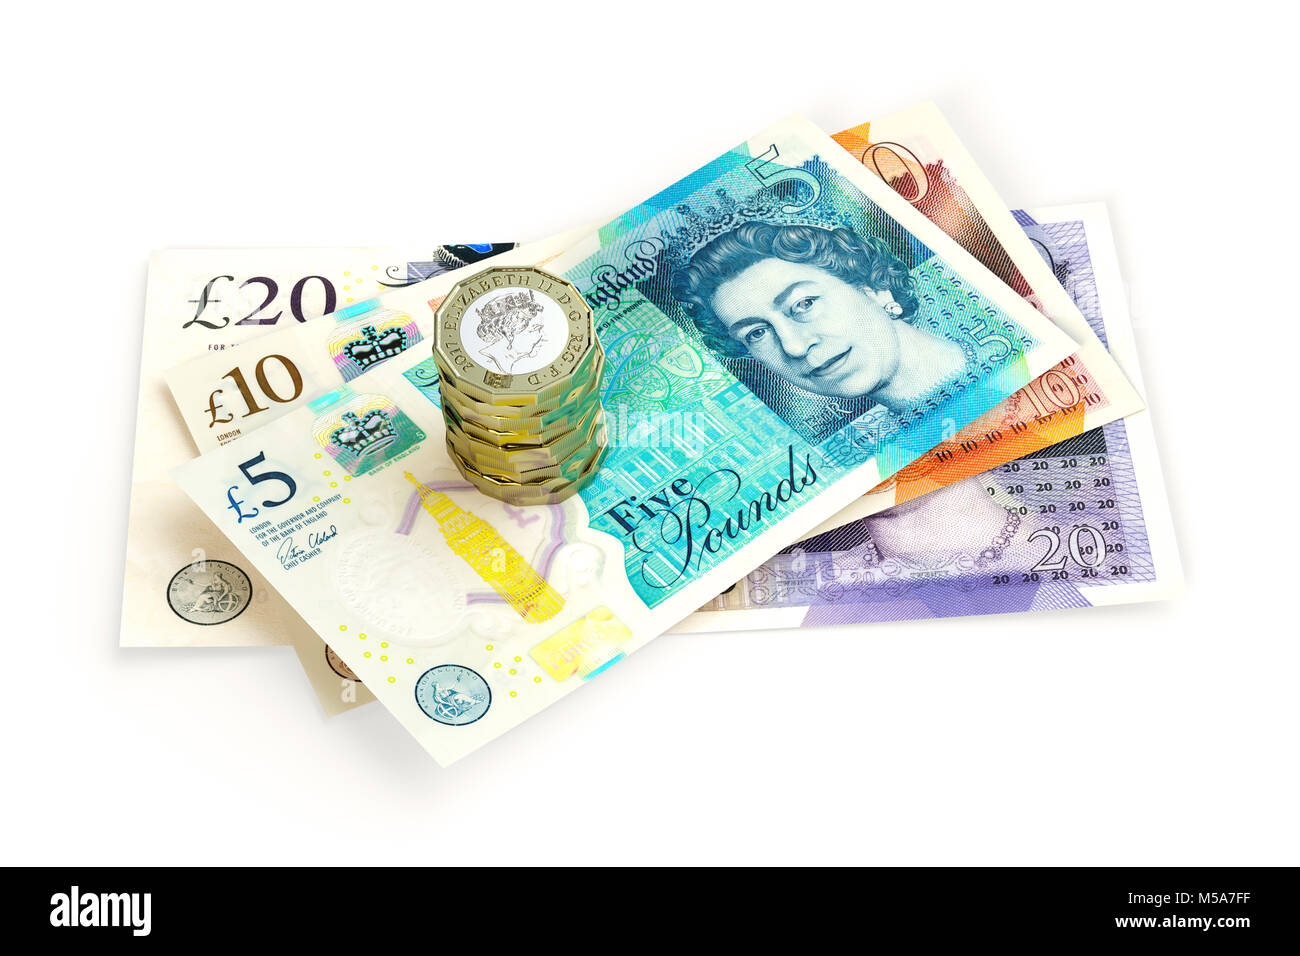 Regno Unito denaro - Nuovo problema £20, £10, £5 Pound Sterling note da vicino con una pila di nuovo design 2017 £ 1 una libbra di monete Foto Stock